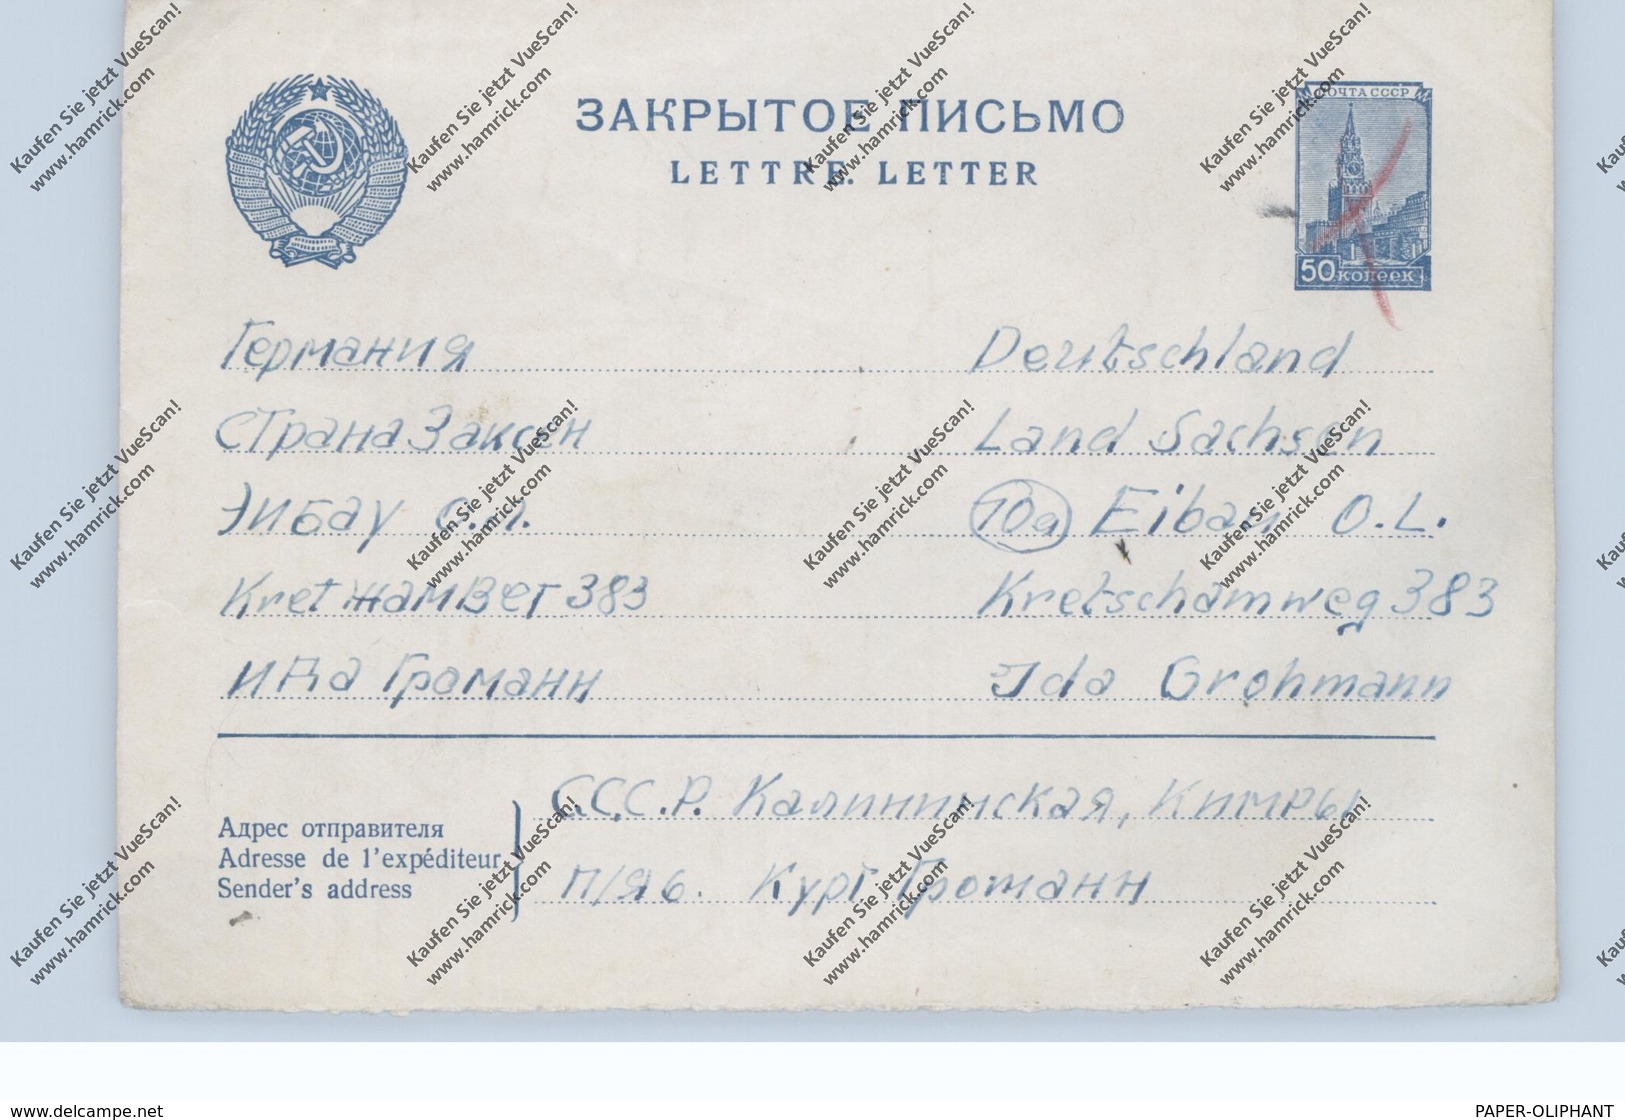 RUSSIA / RUSSLAND, Postal Stationery / Ganzsache, Michel U 114, In Die DDR, Handentwertet - Briefe U. Dokumente